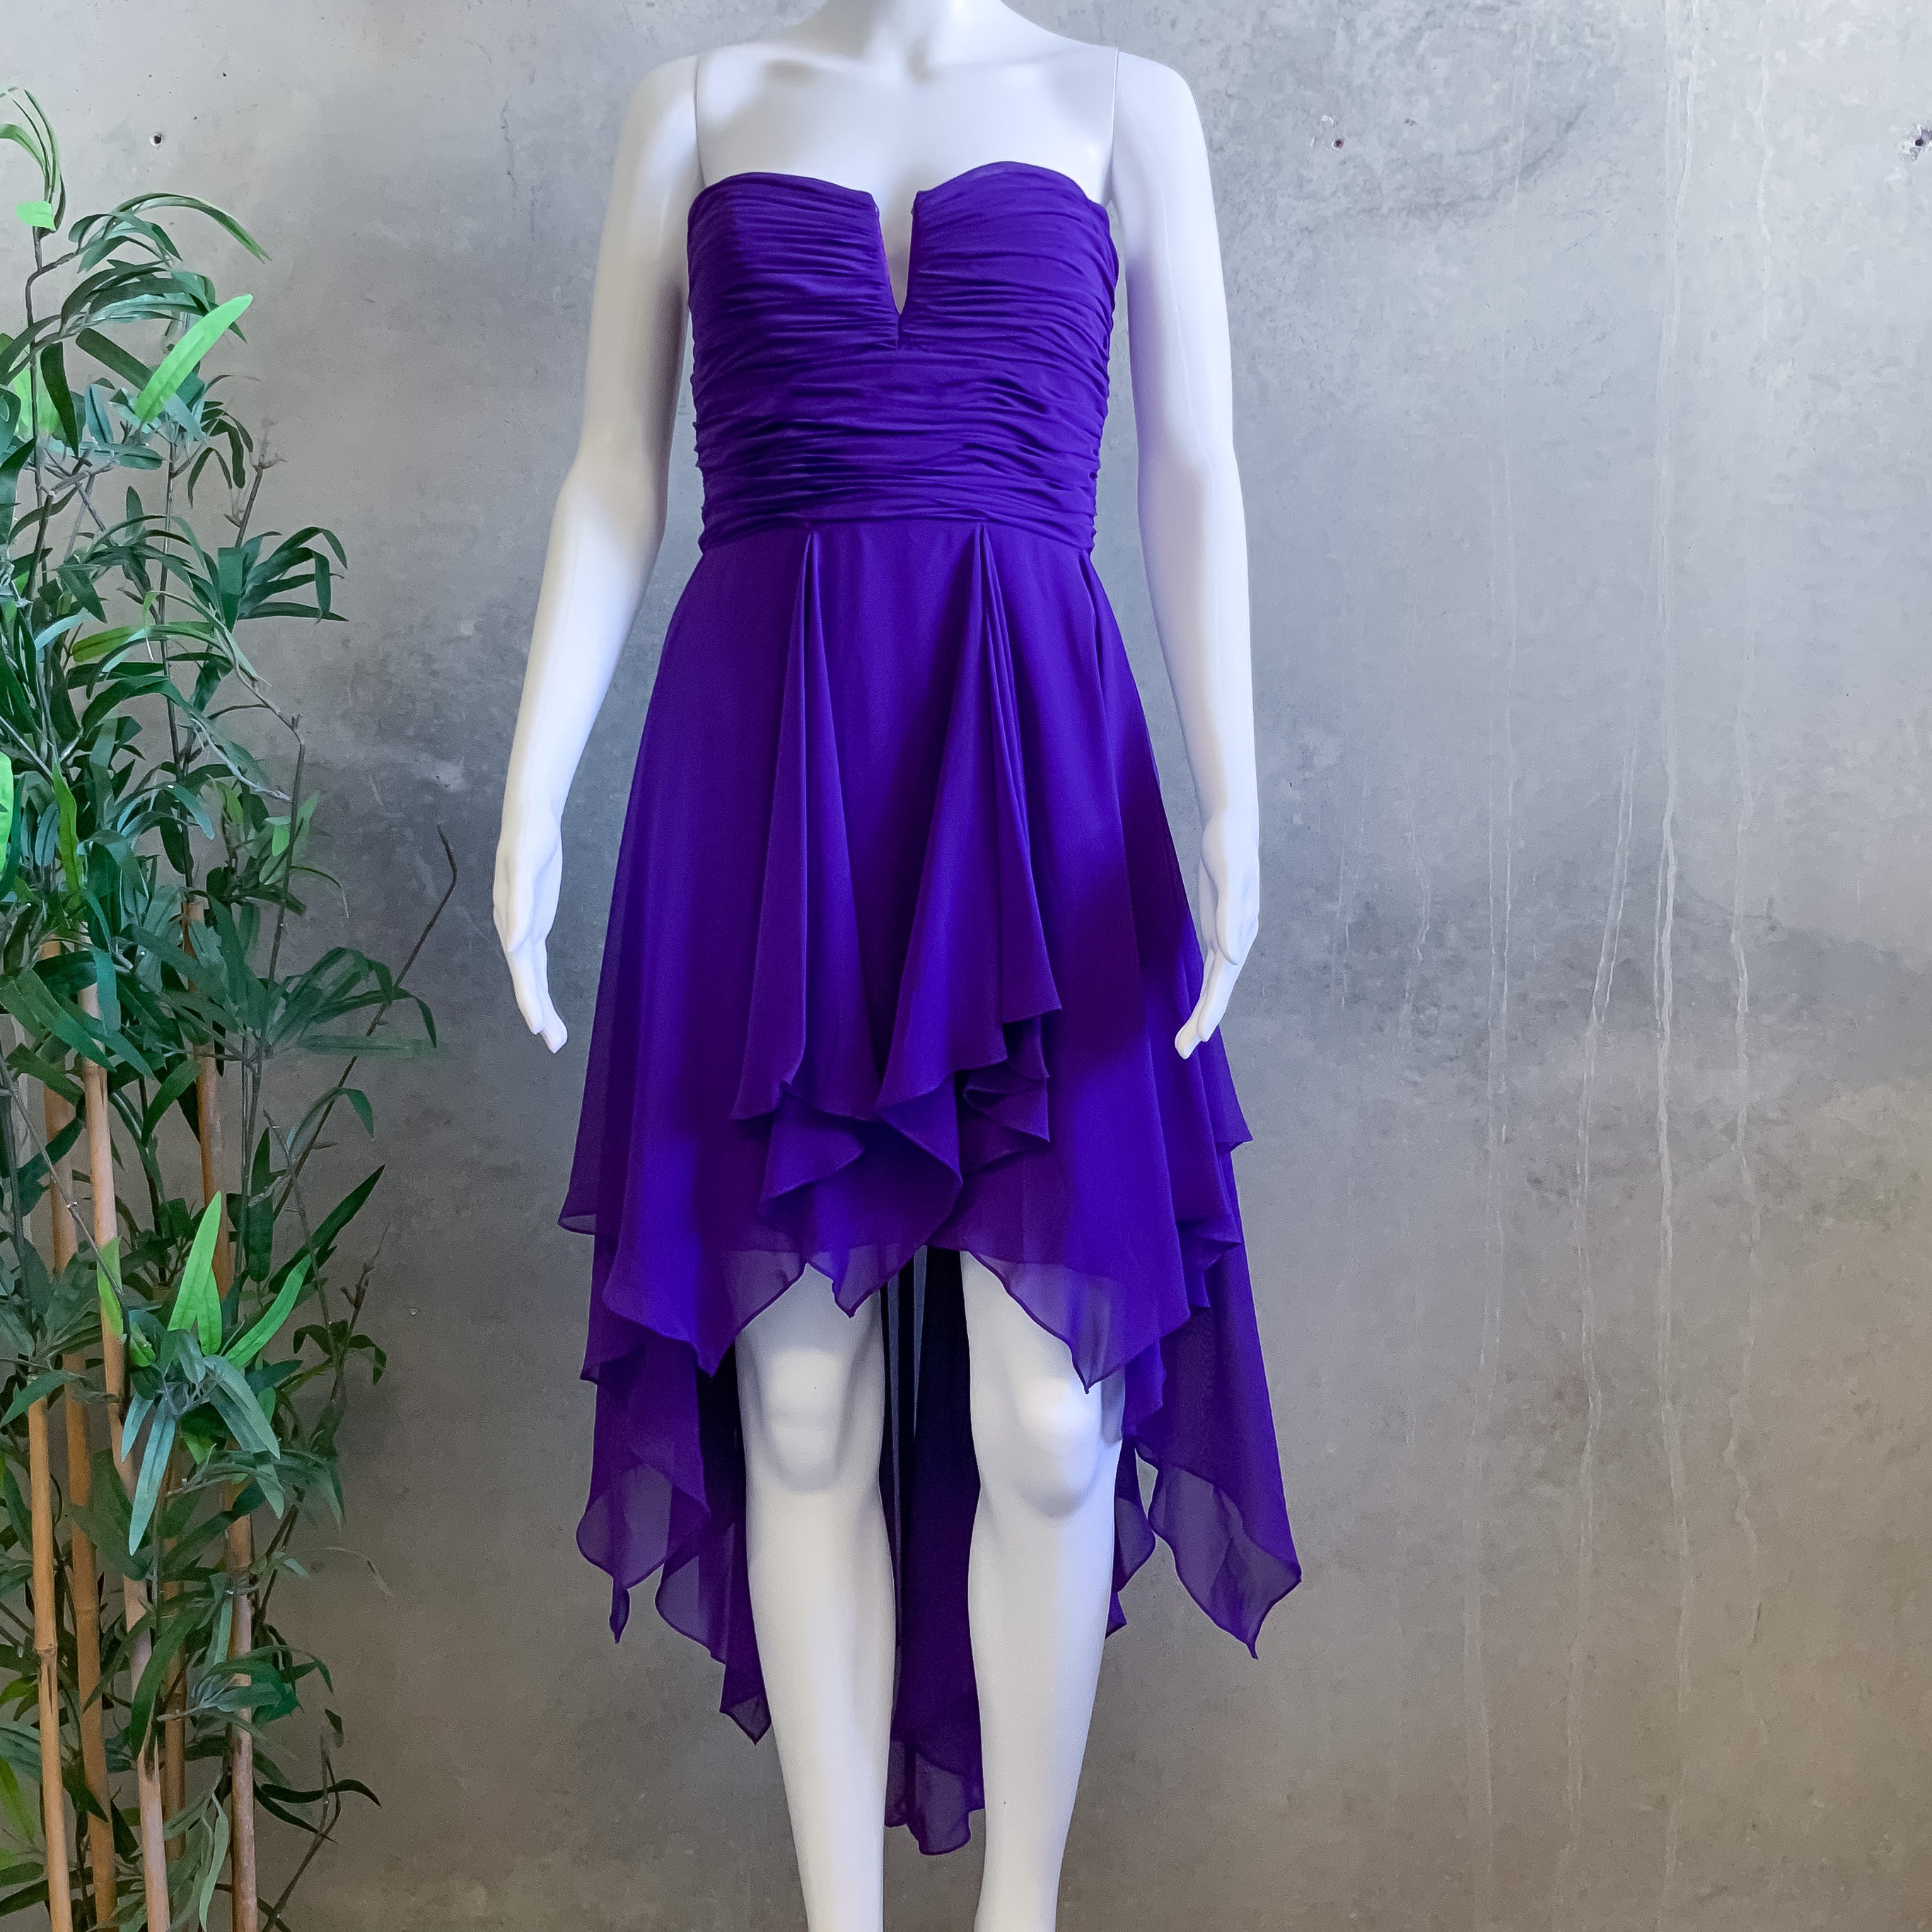 MEI MEI Purple Chiffon Strapless Sweetheart Neckline Hi-Low Cocktail Dress - Size 8